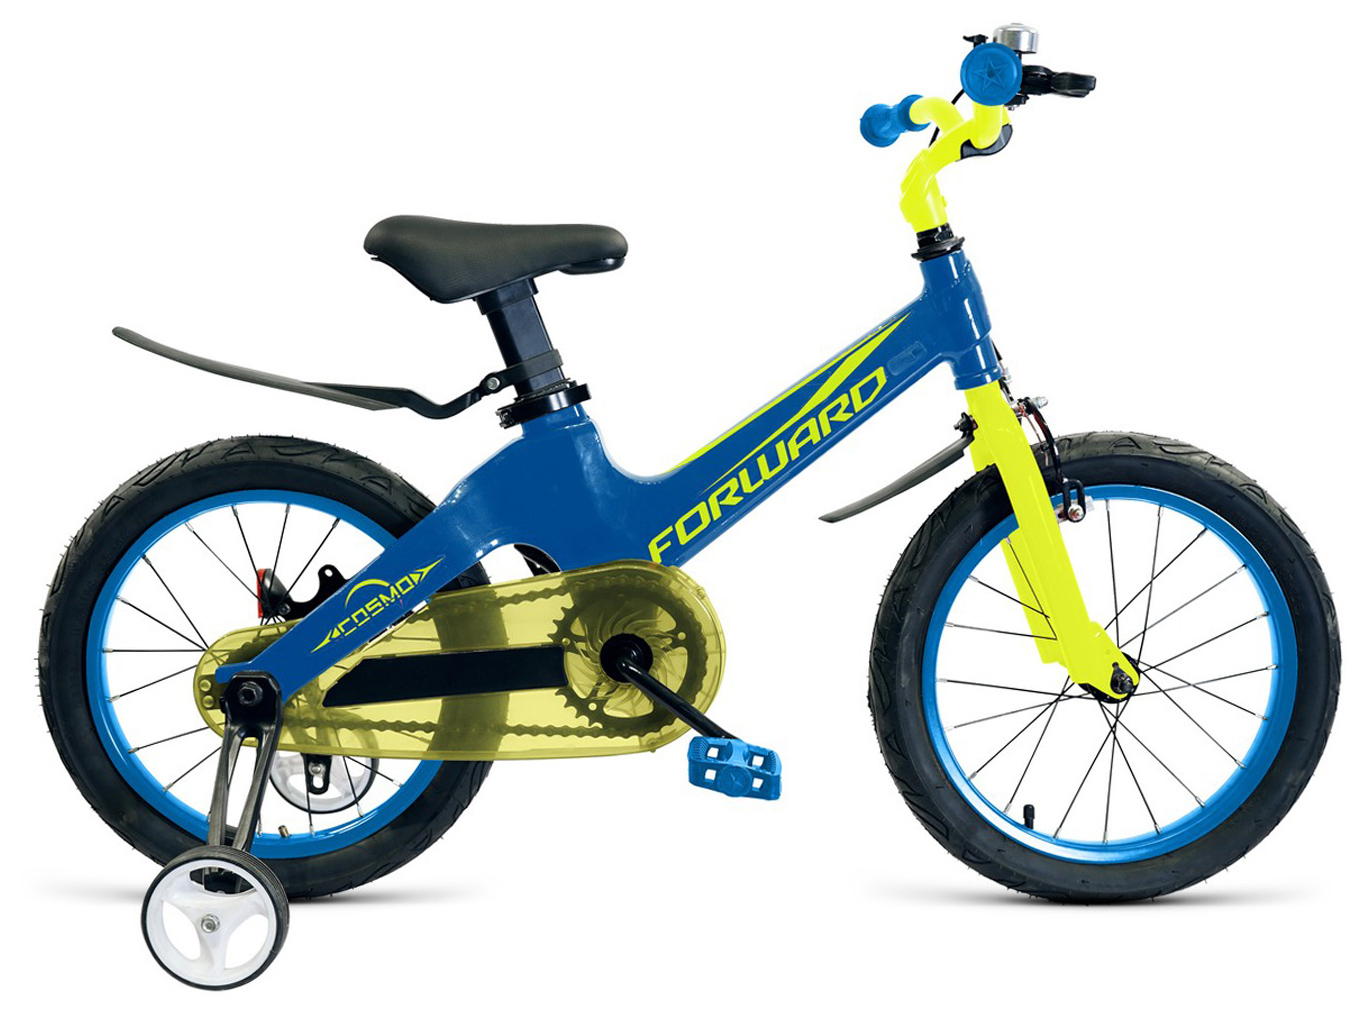  Отзывы о Детском велосипеде Forward Cosmo 16 2019